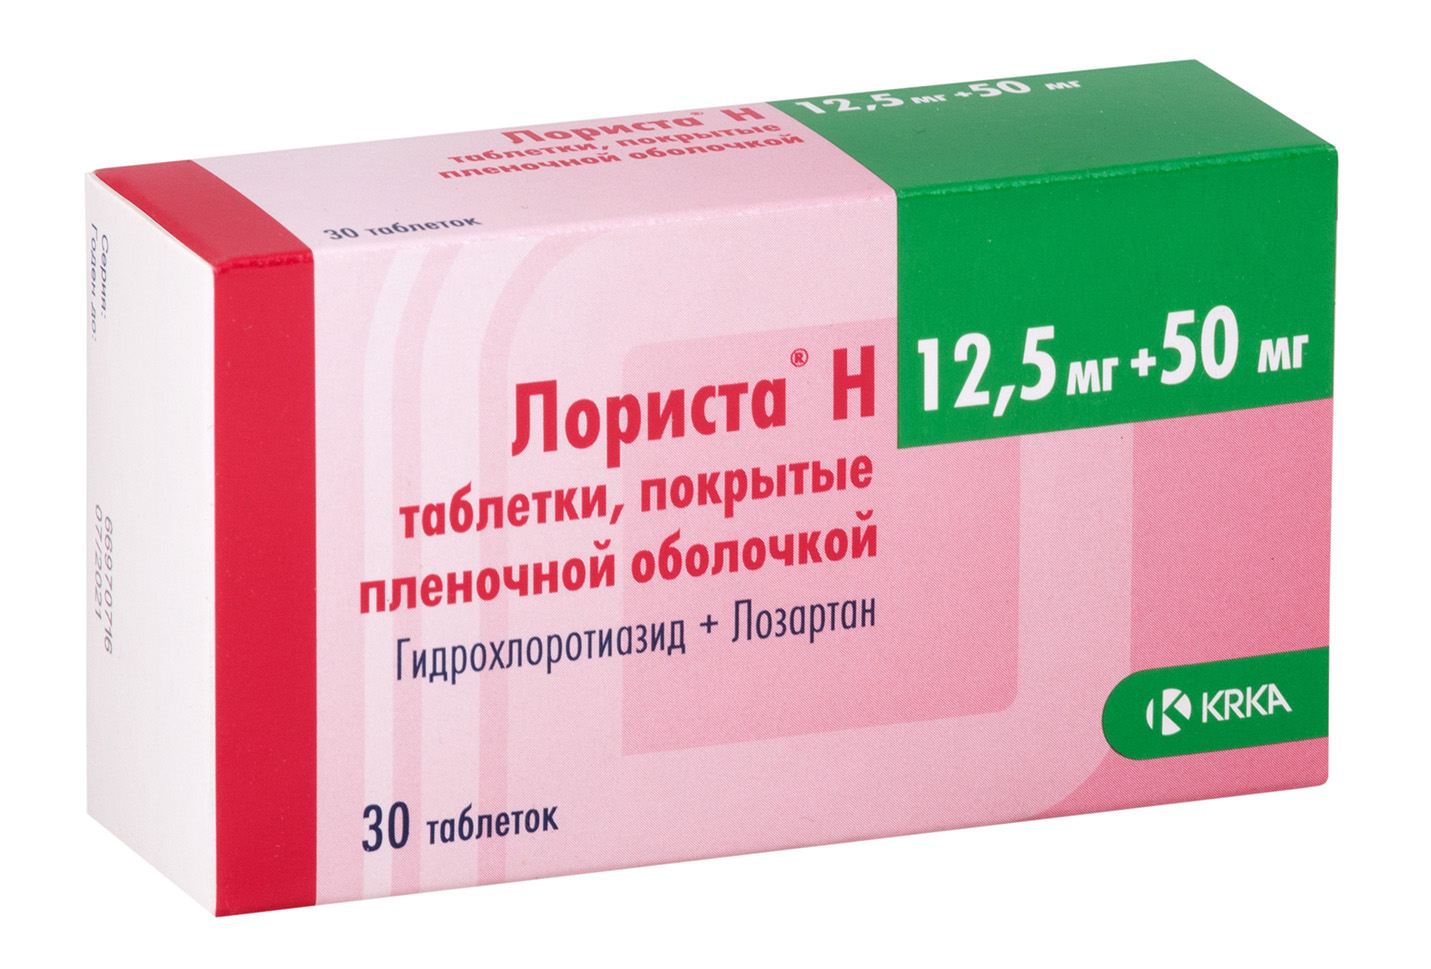 Лориста н, таблетки покрытые пленочной оболочкой 12,5 мг+50 мг 30 шт.